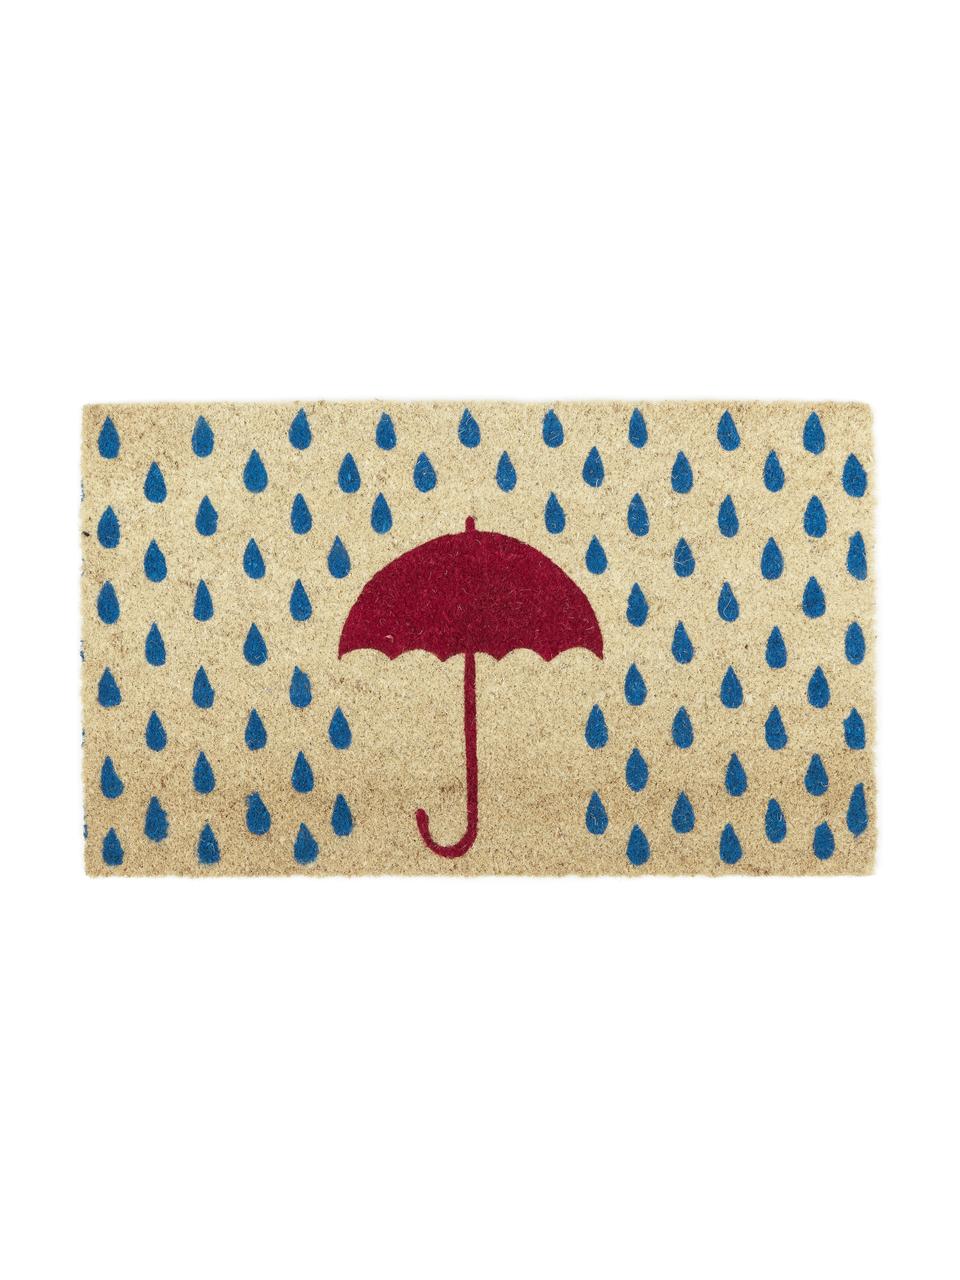 Zerbino Rainy, Beige chiaro, blu, rosso, Larg. 45 x Lung. 75 cm